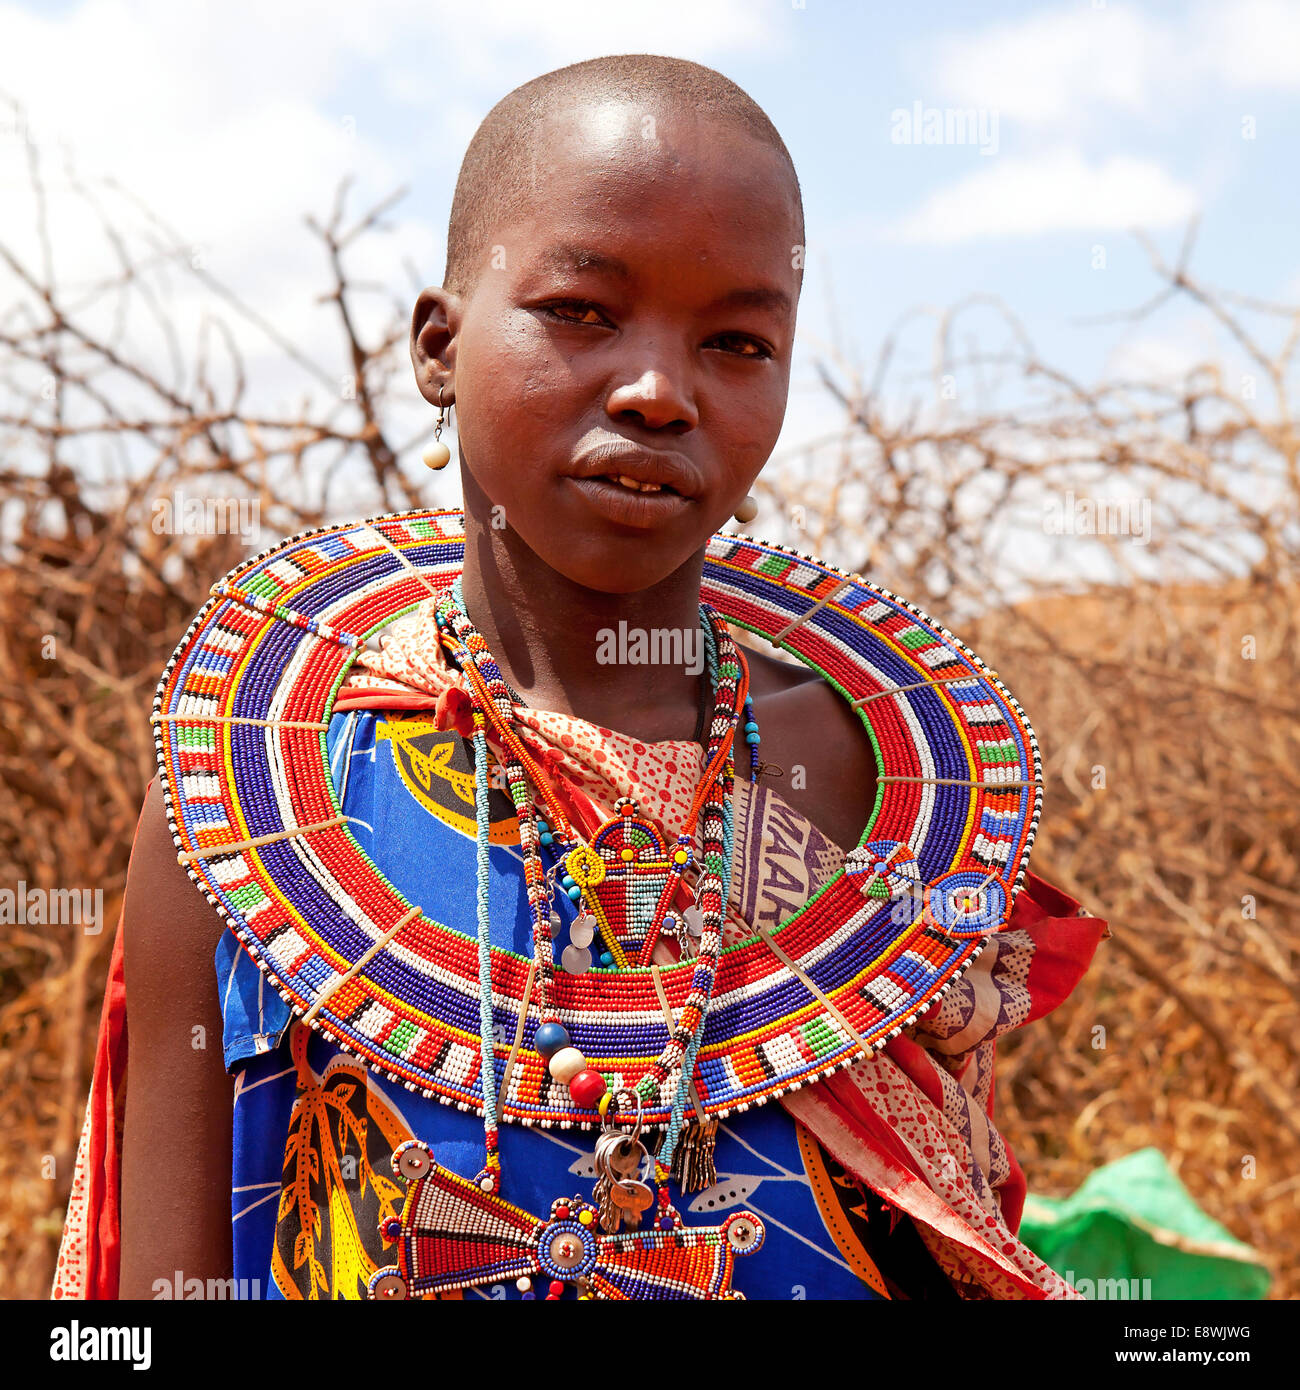 Maasai Mara Women's Tribal Jewelry Print Tote Bag